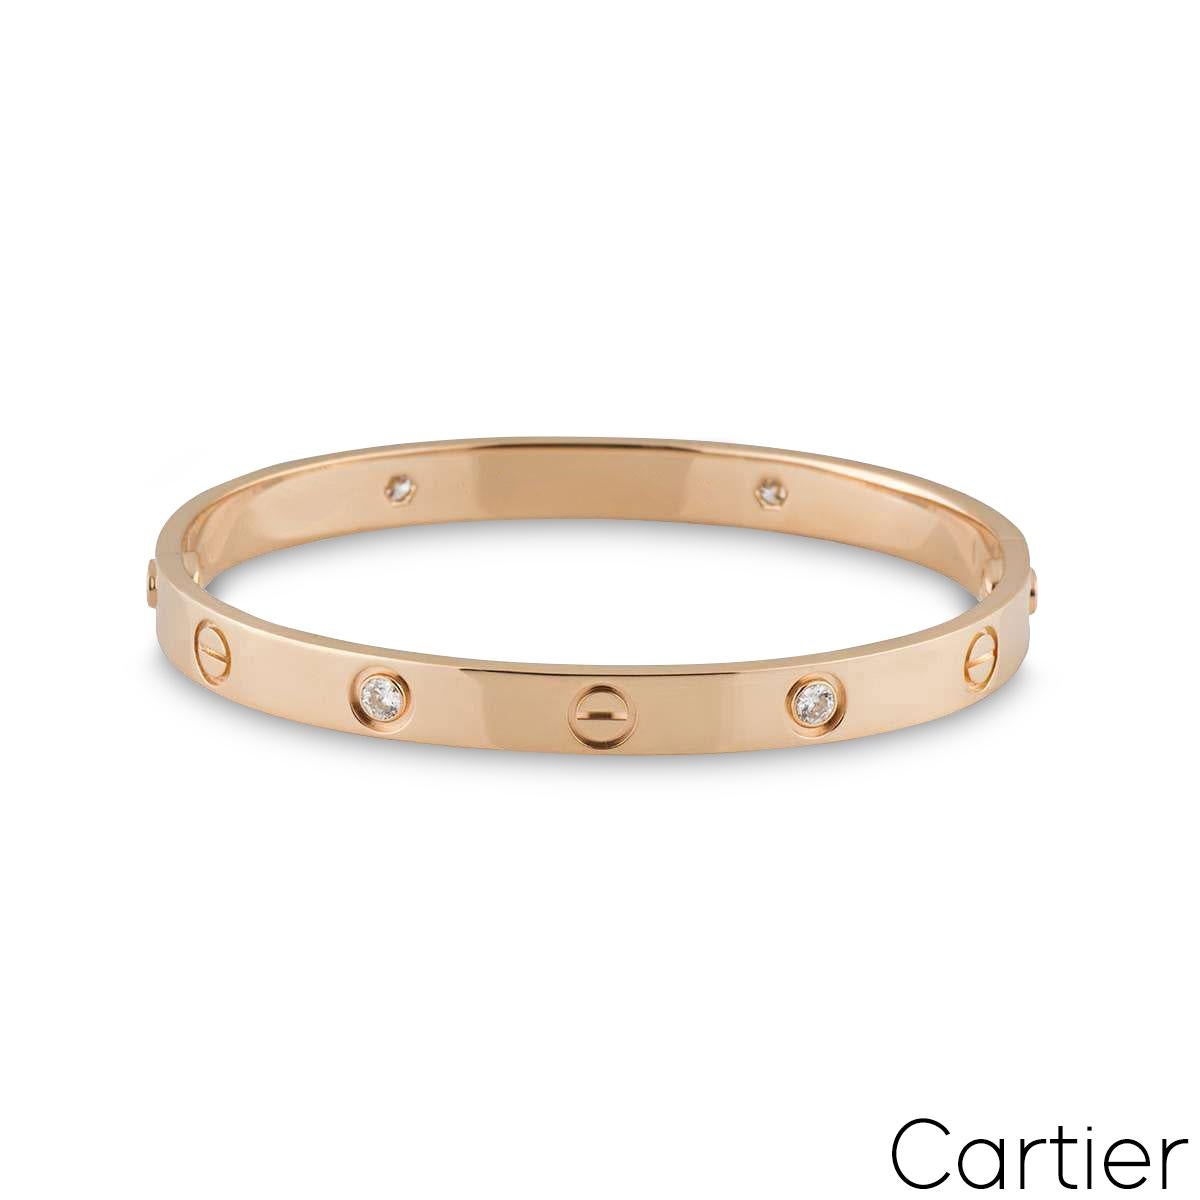 Un bracelet iconique de Cartier en or rose 18 carats et demi diamant de la collection Love. Le motif iconique de la vis alterne avec 4 diamants ronds de taille brillant sur le bord extérieur du bracelet, pour un total de 0,42ct. Le bracelet, de